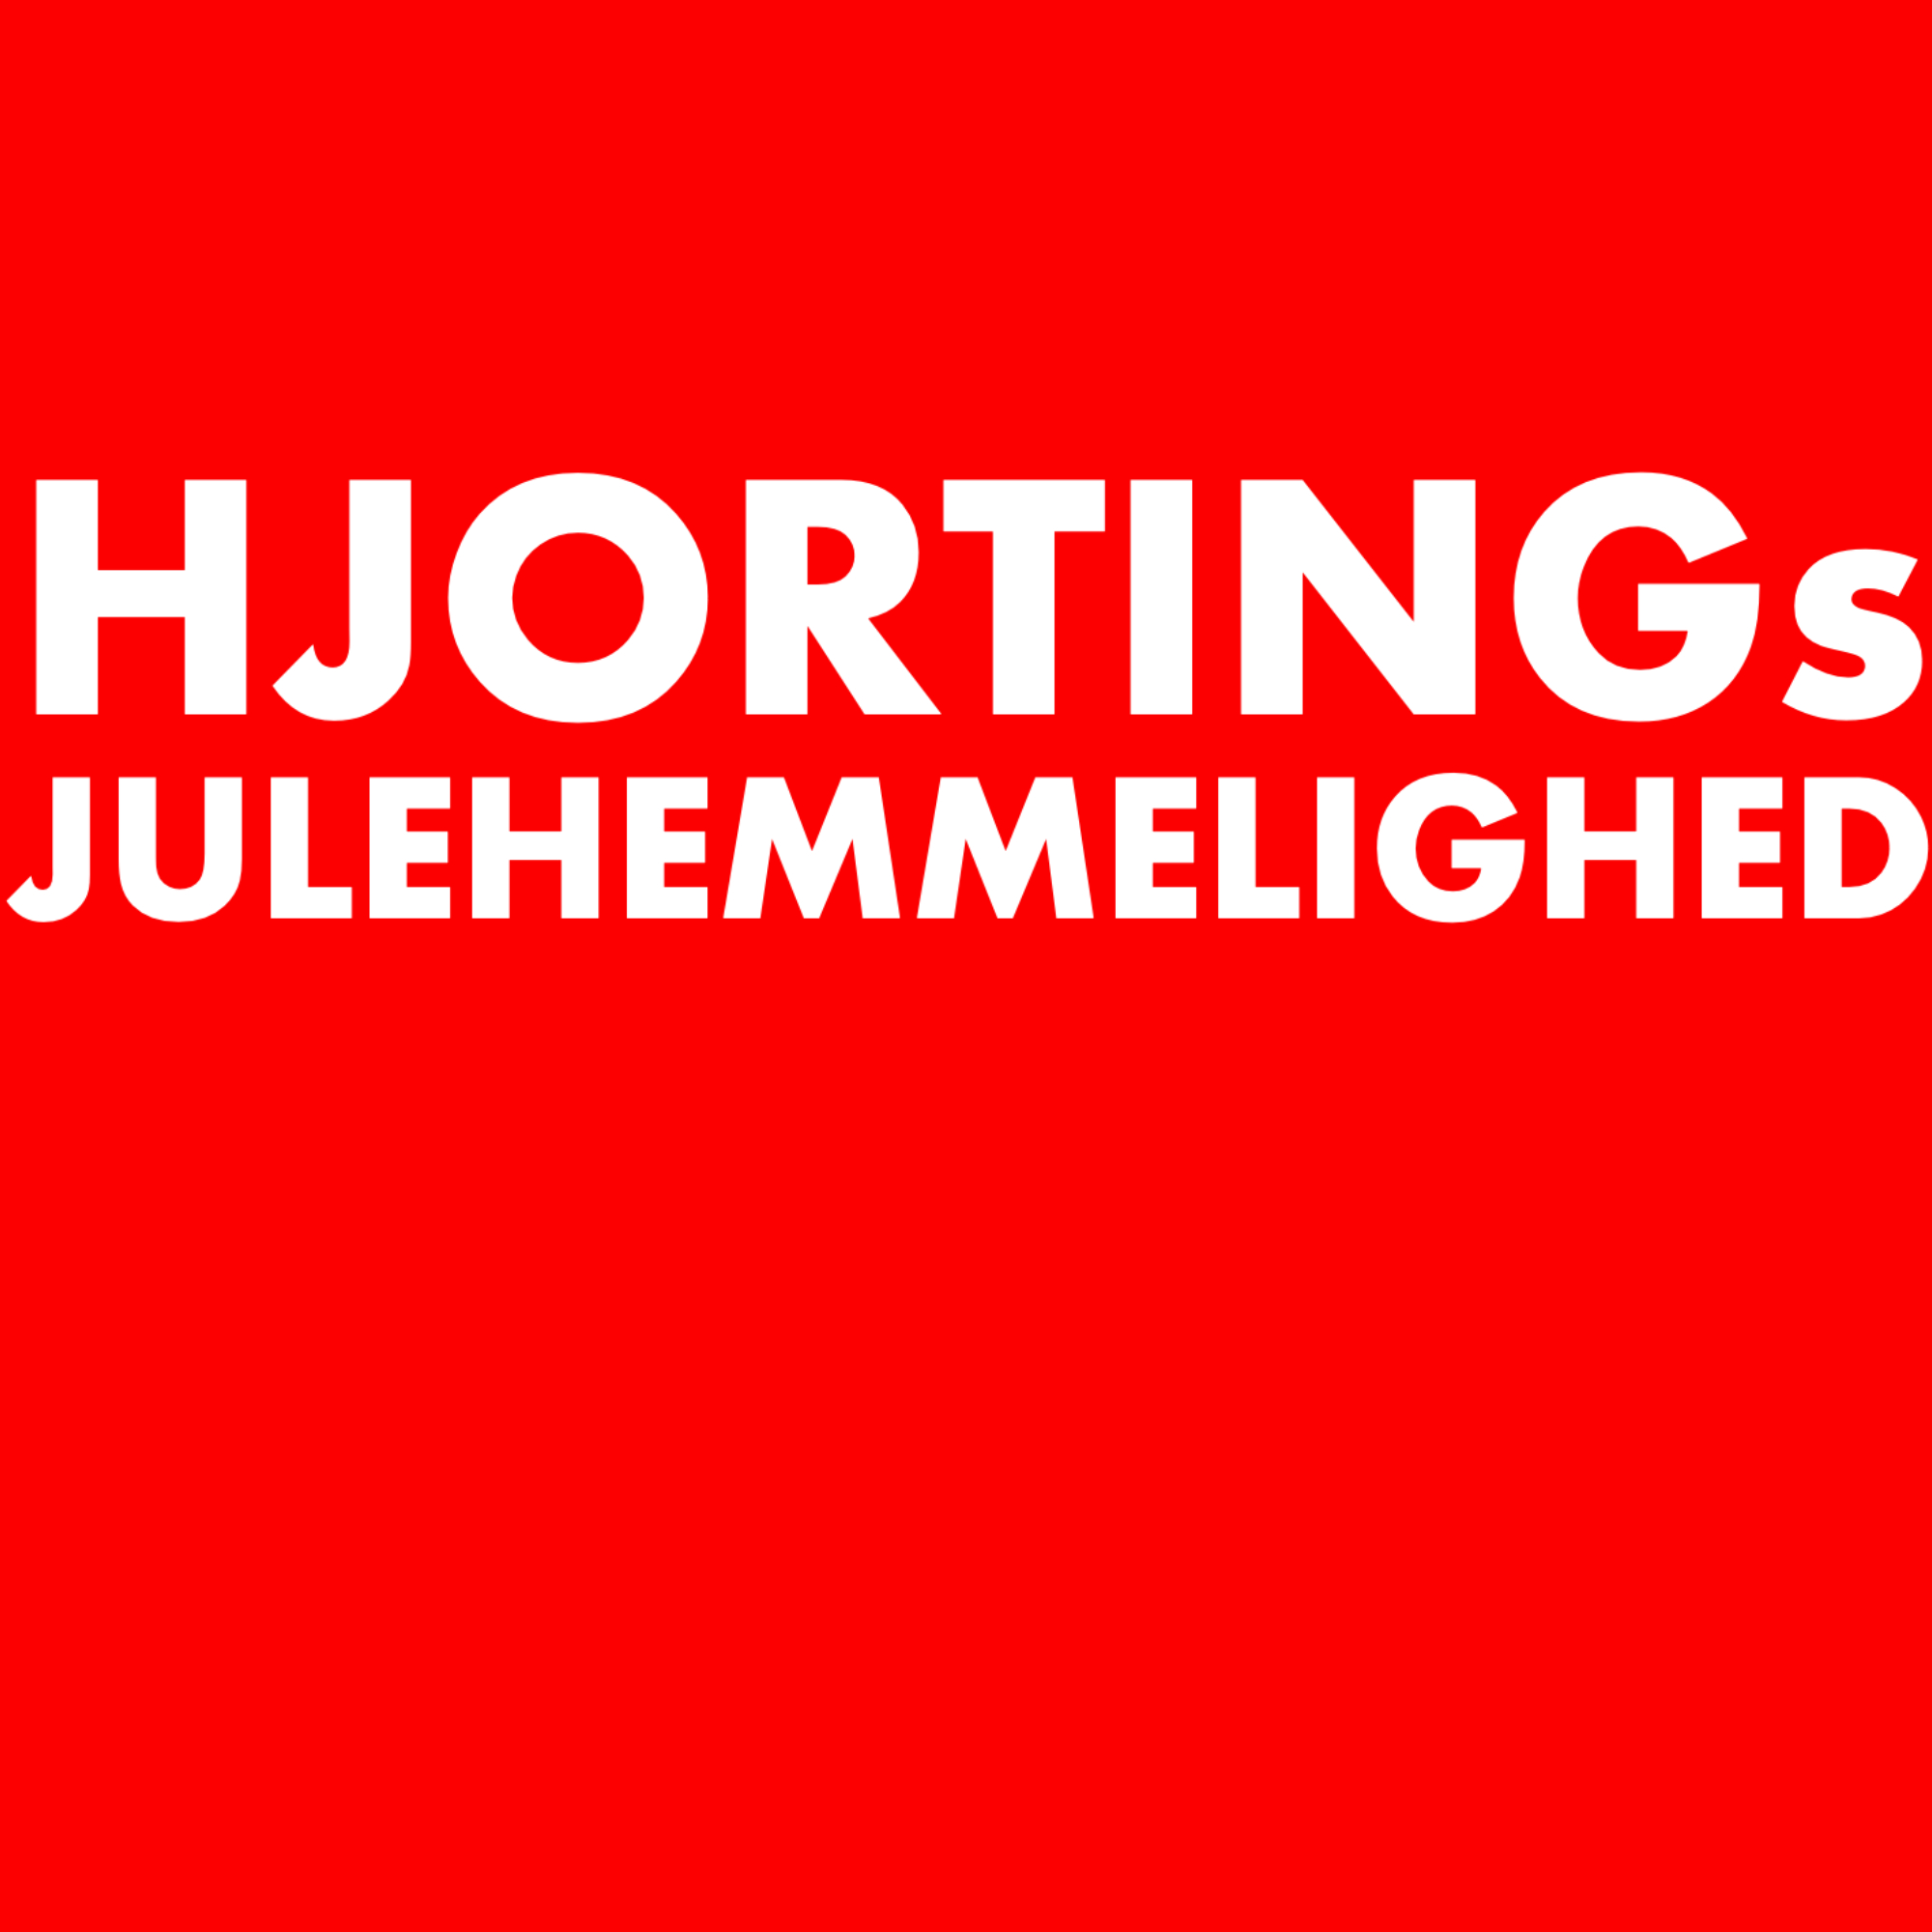 HJORTINGS JULEHEMMELIGHED: NISSER OVERALT!